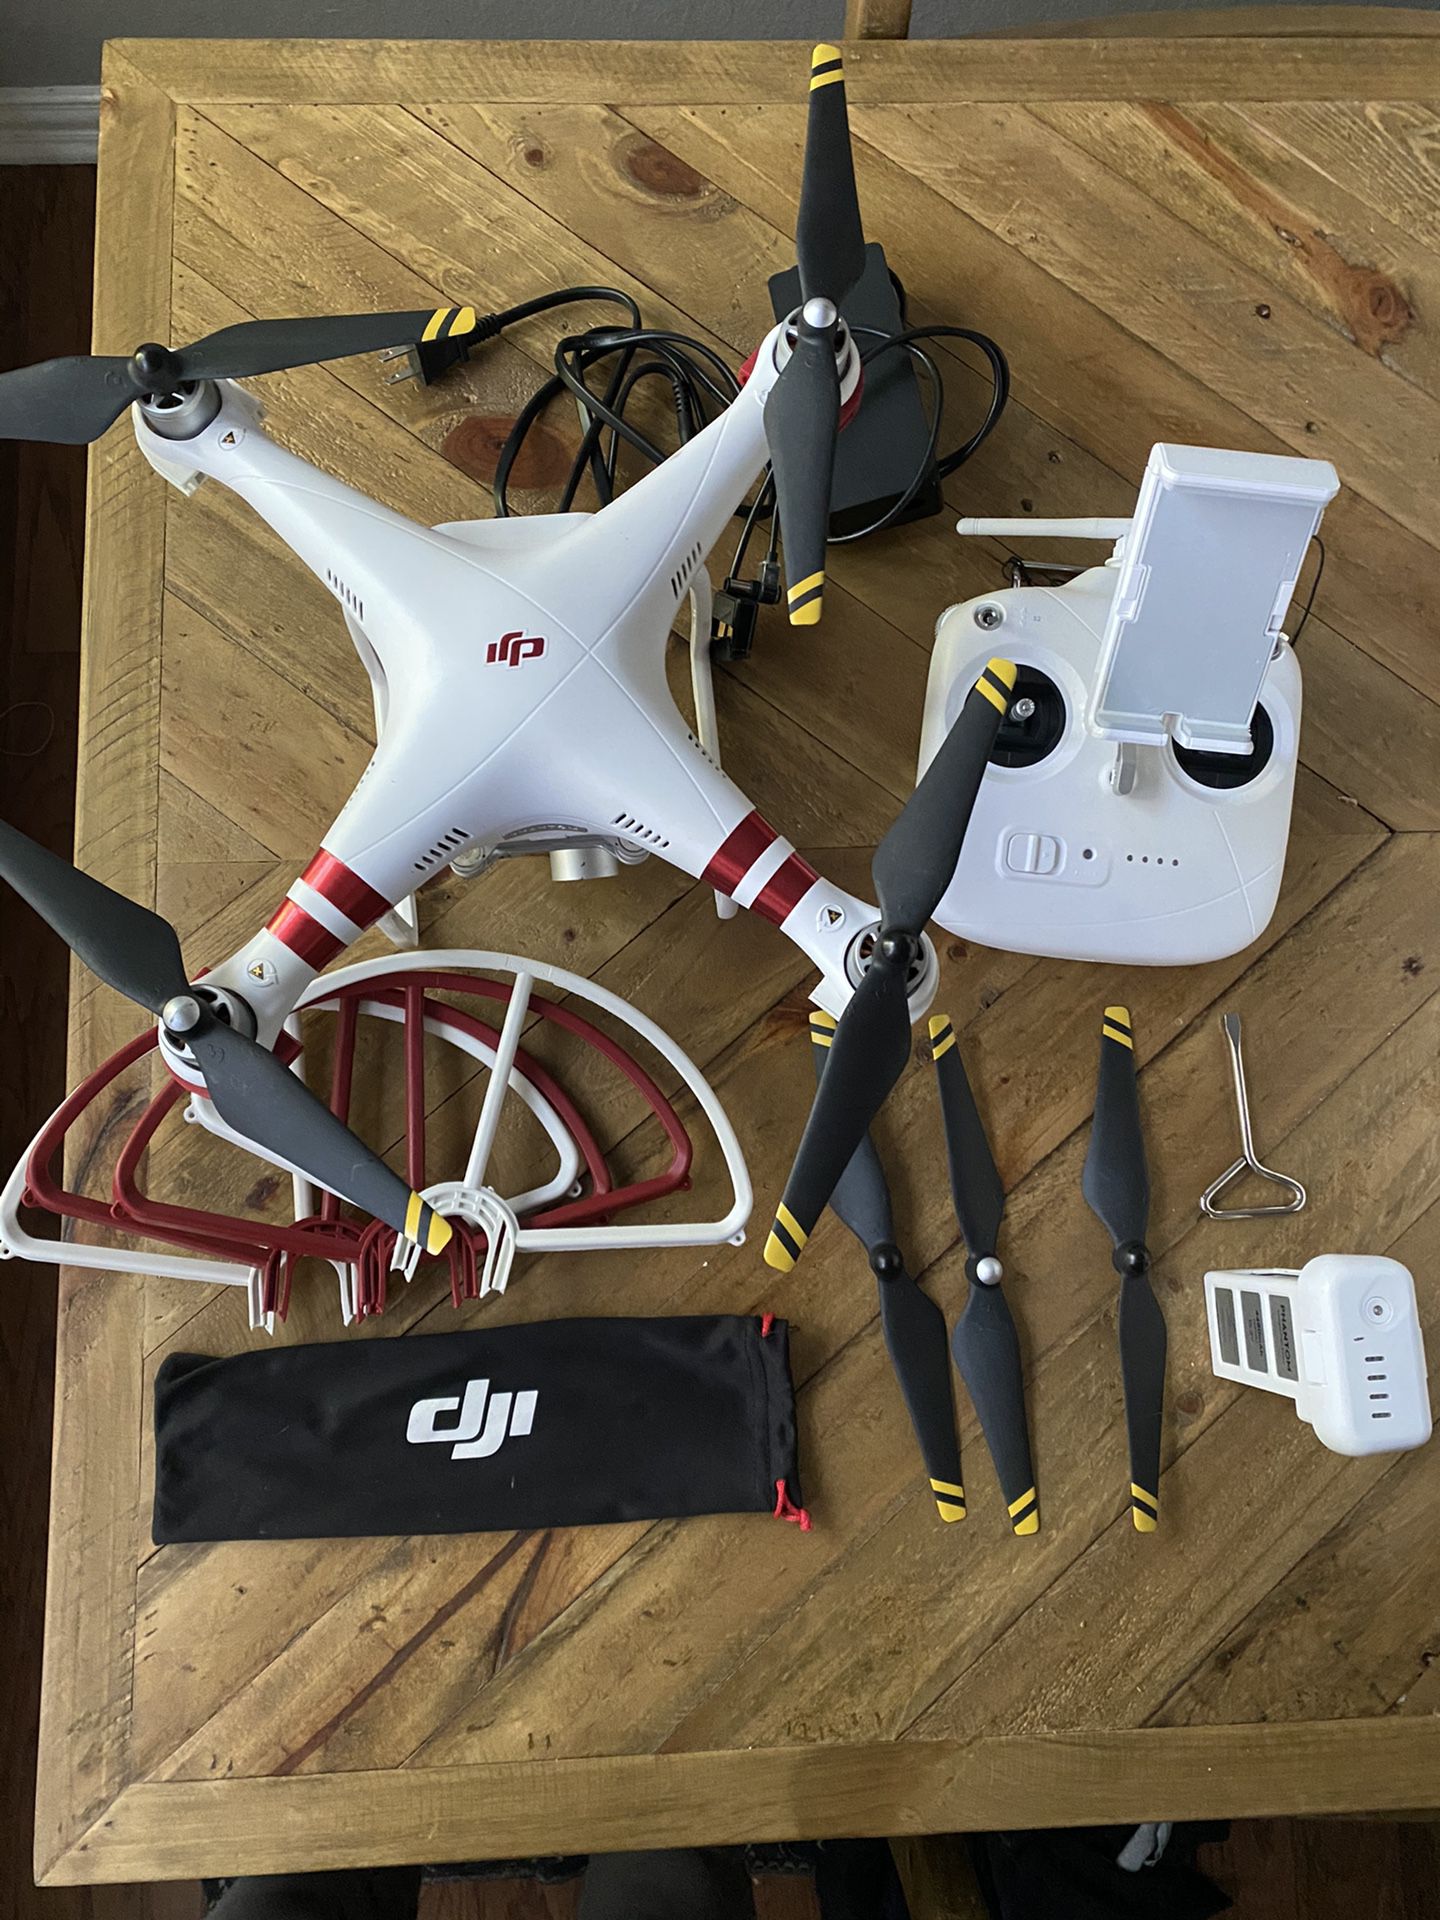 DJI phantom 3 standard camera drone 2.7k